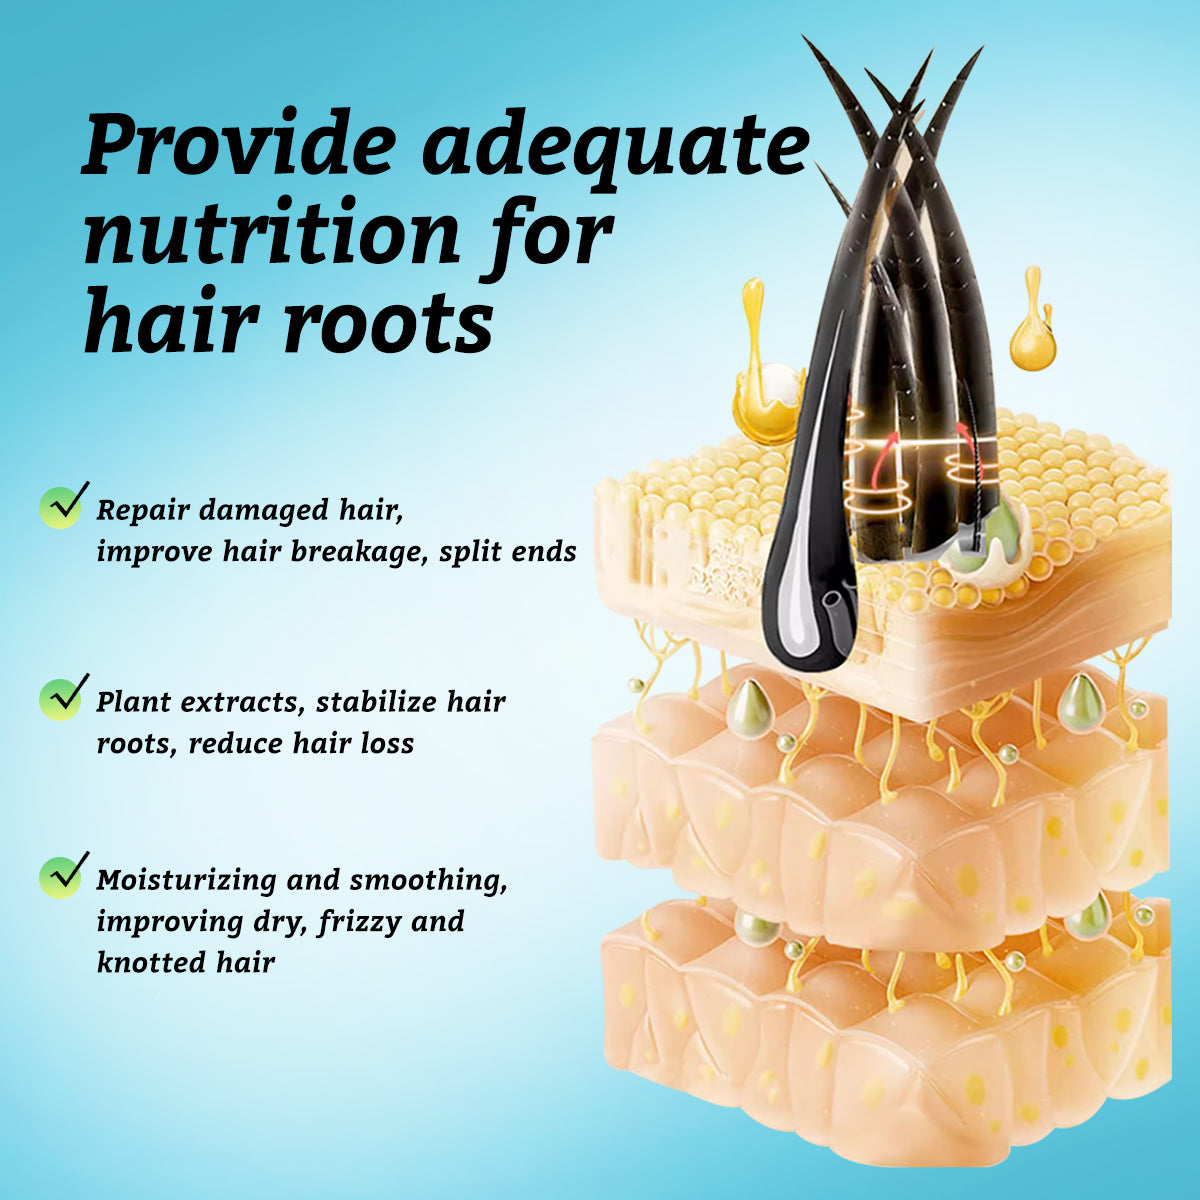 RtopR【Official Store】Moroccan Hair Essential Oil Dry Hair Repair Hair Oil Repair Damaged Hair Hair Repair Products